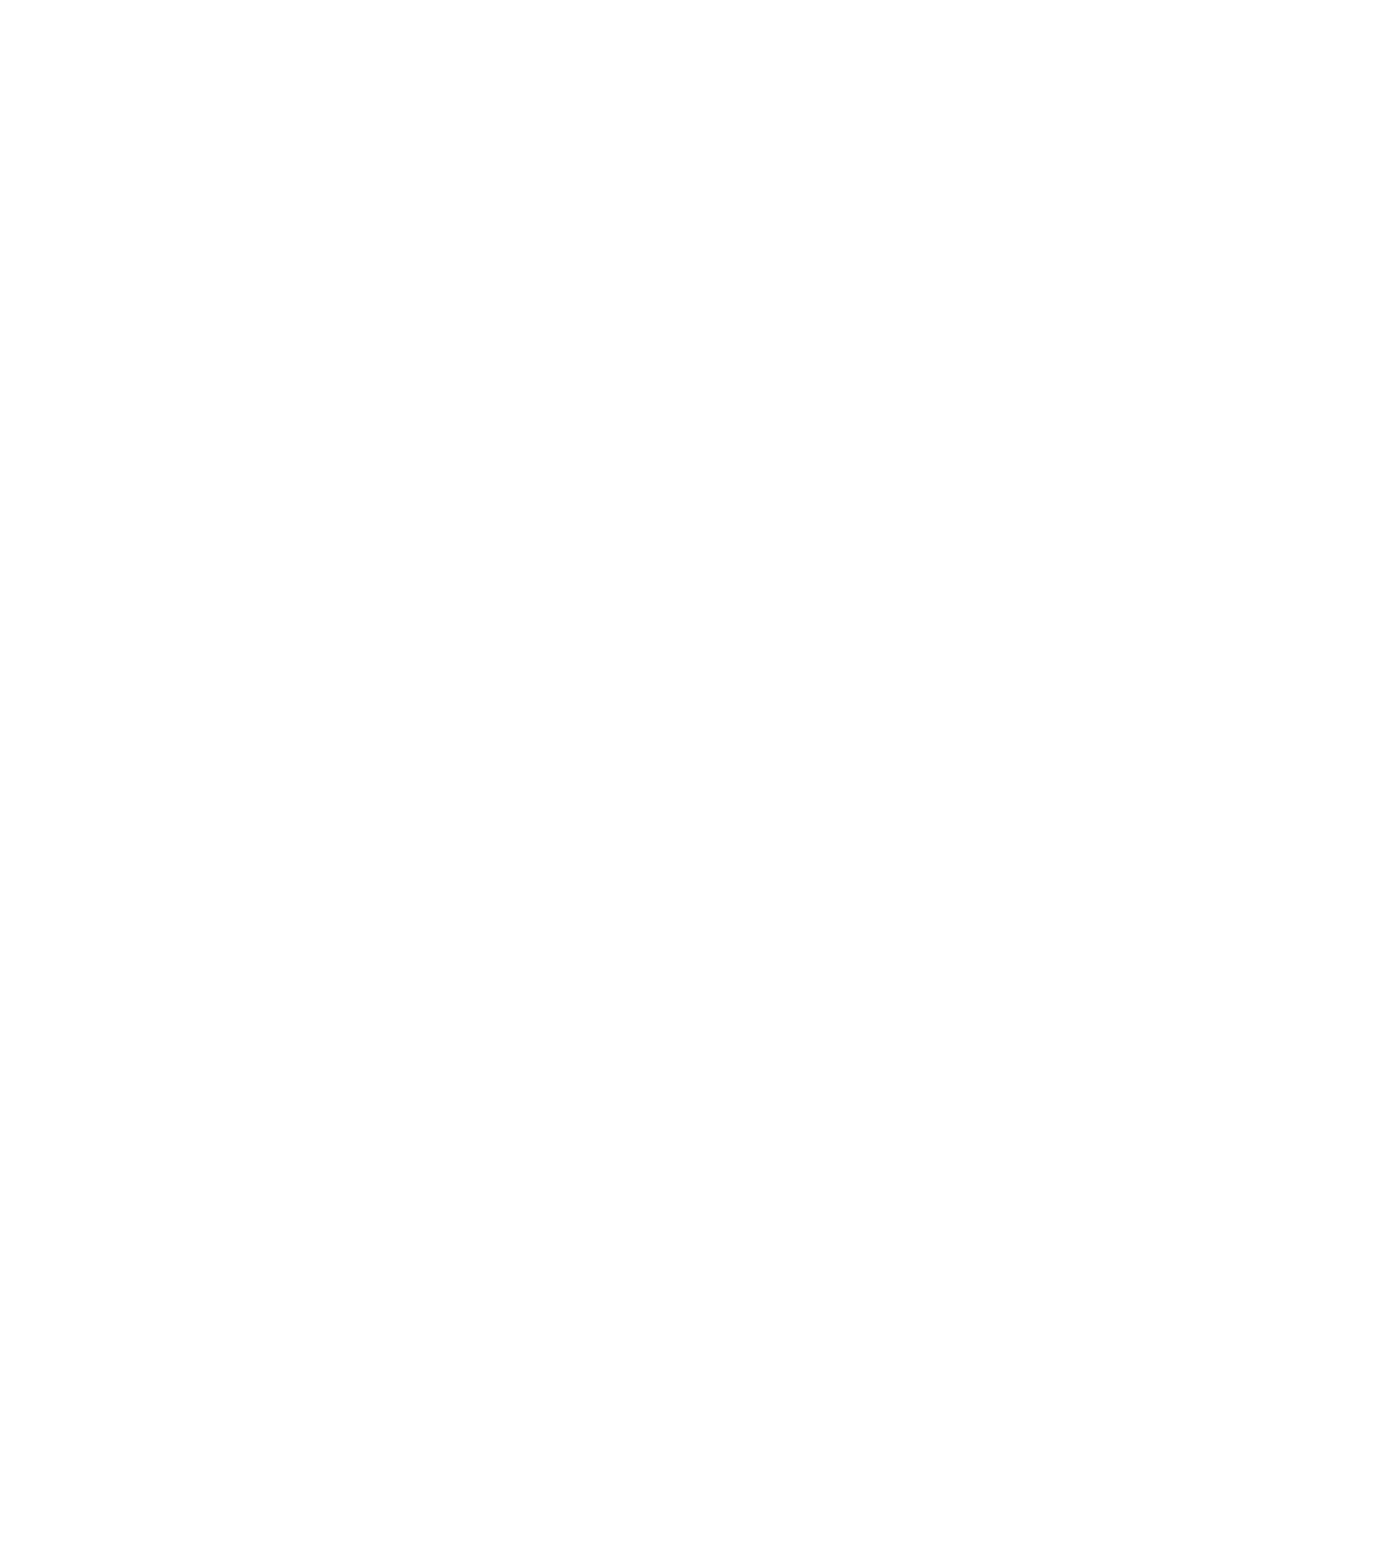 Queen City Design Logo